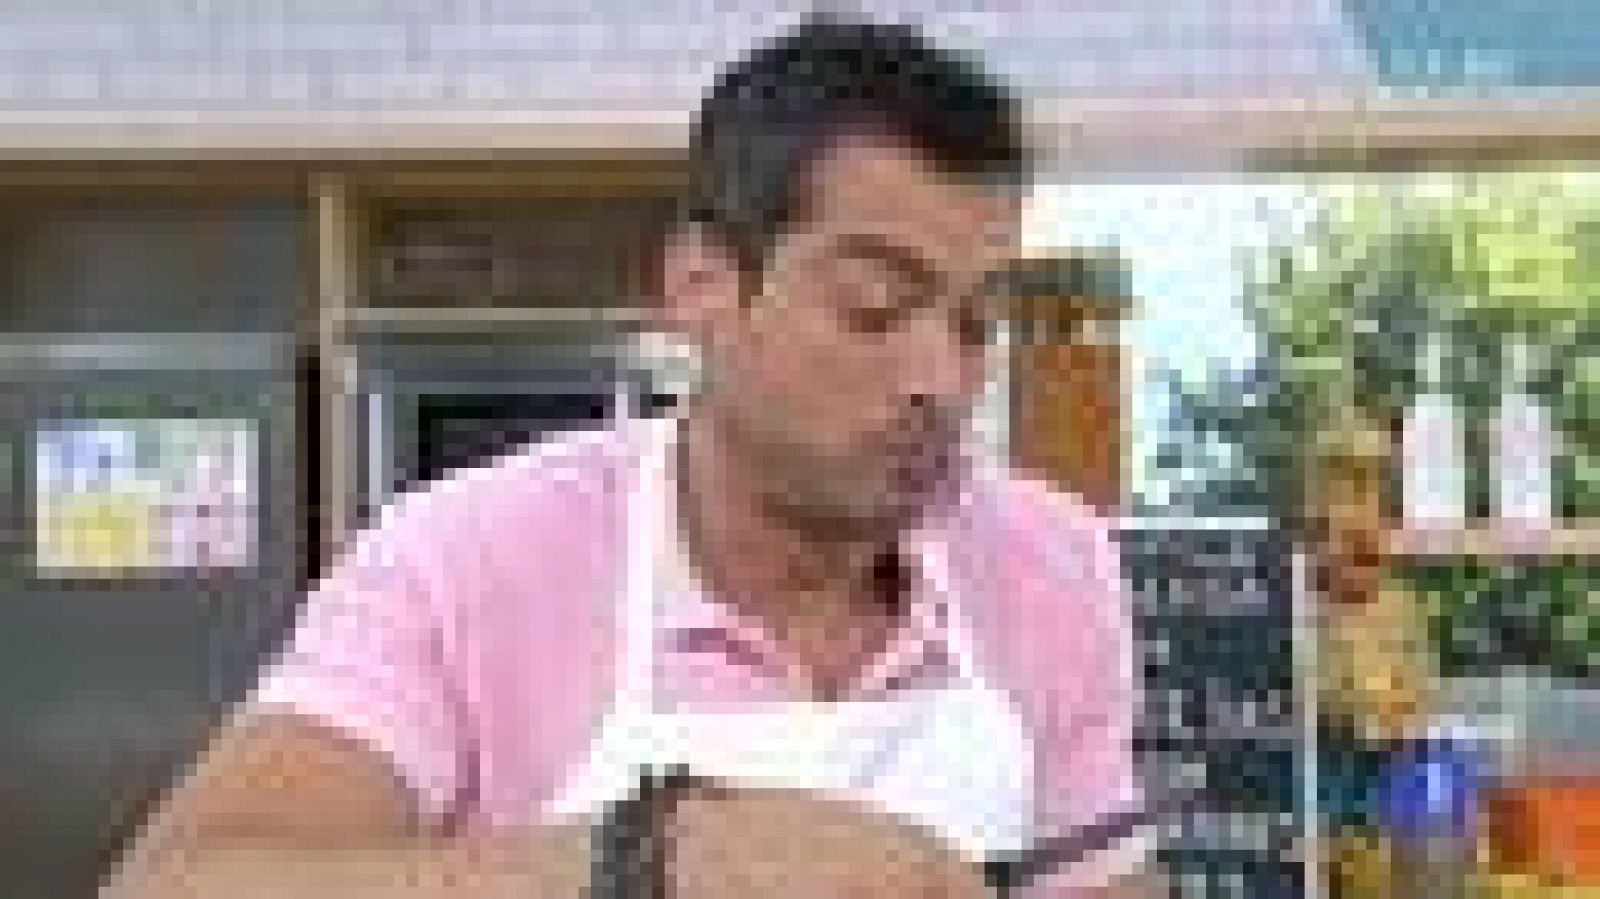 Saber Cocinar - Ensalada de lentejas con chipirones (10/08/11)